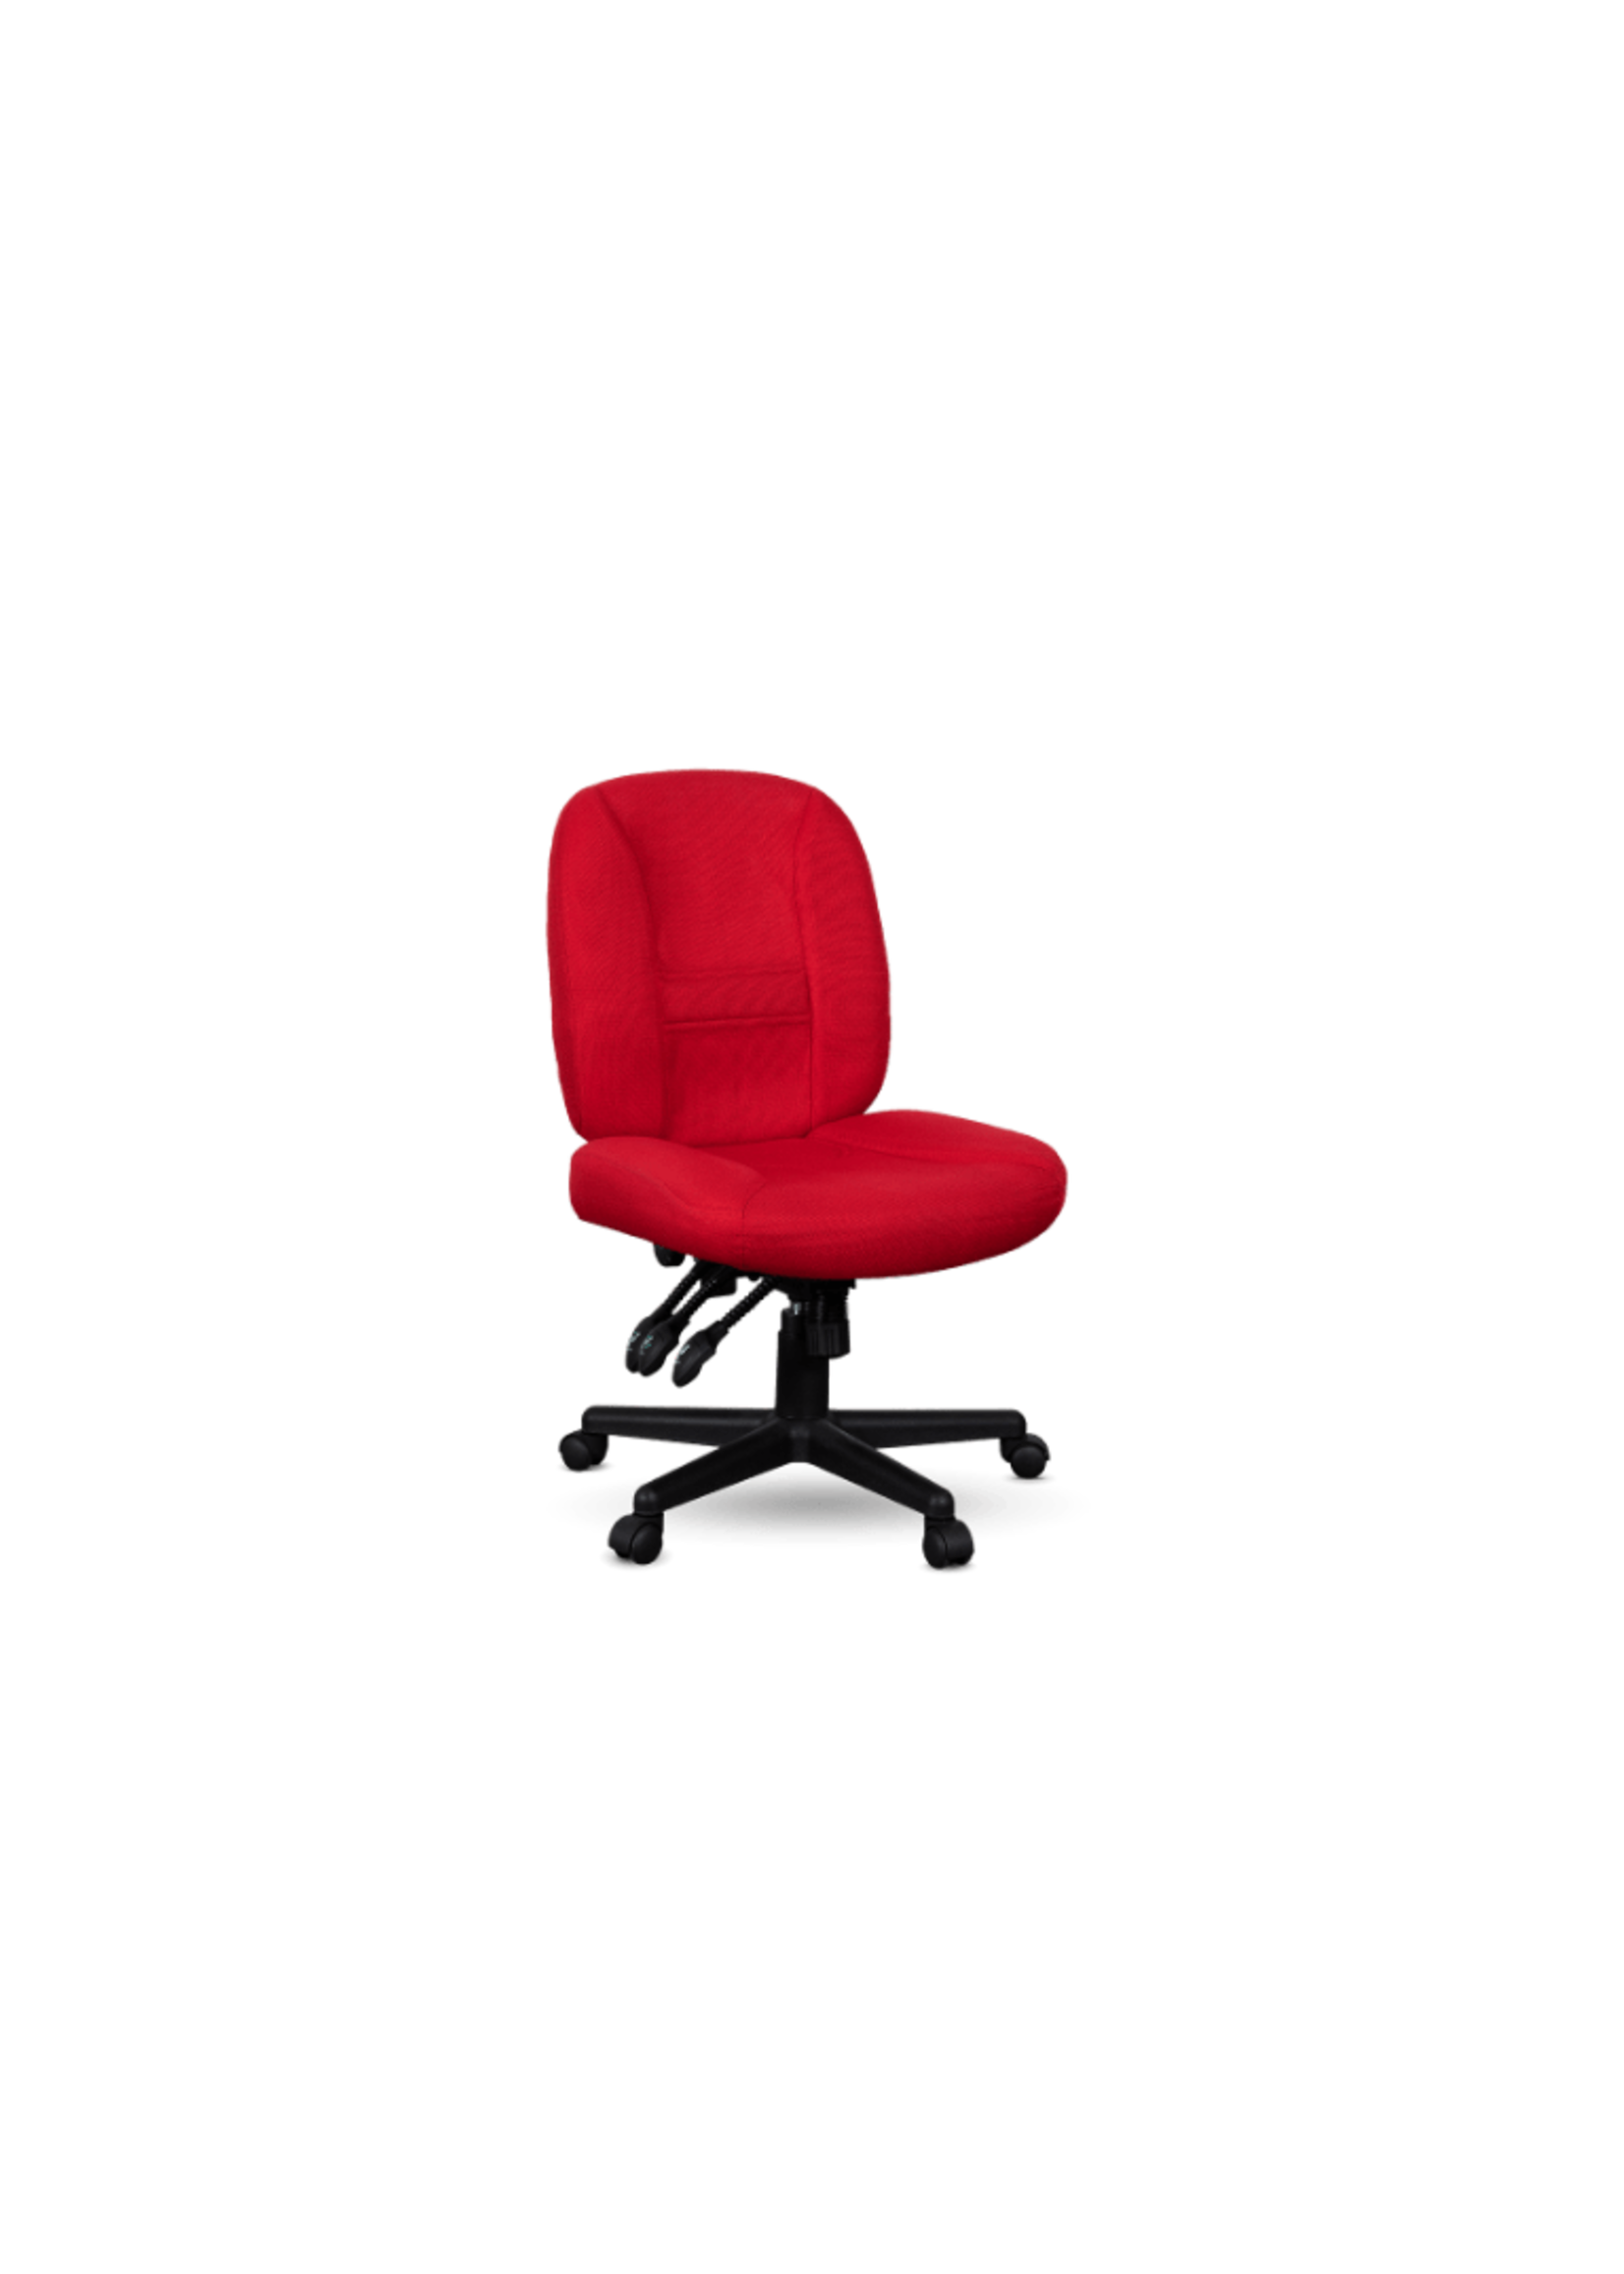 Bernina Bernina Red Chair